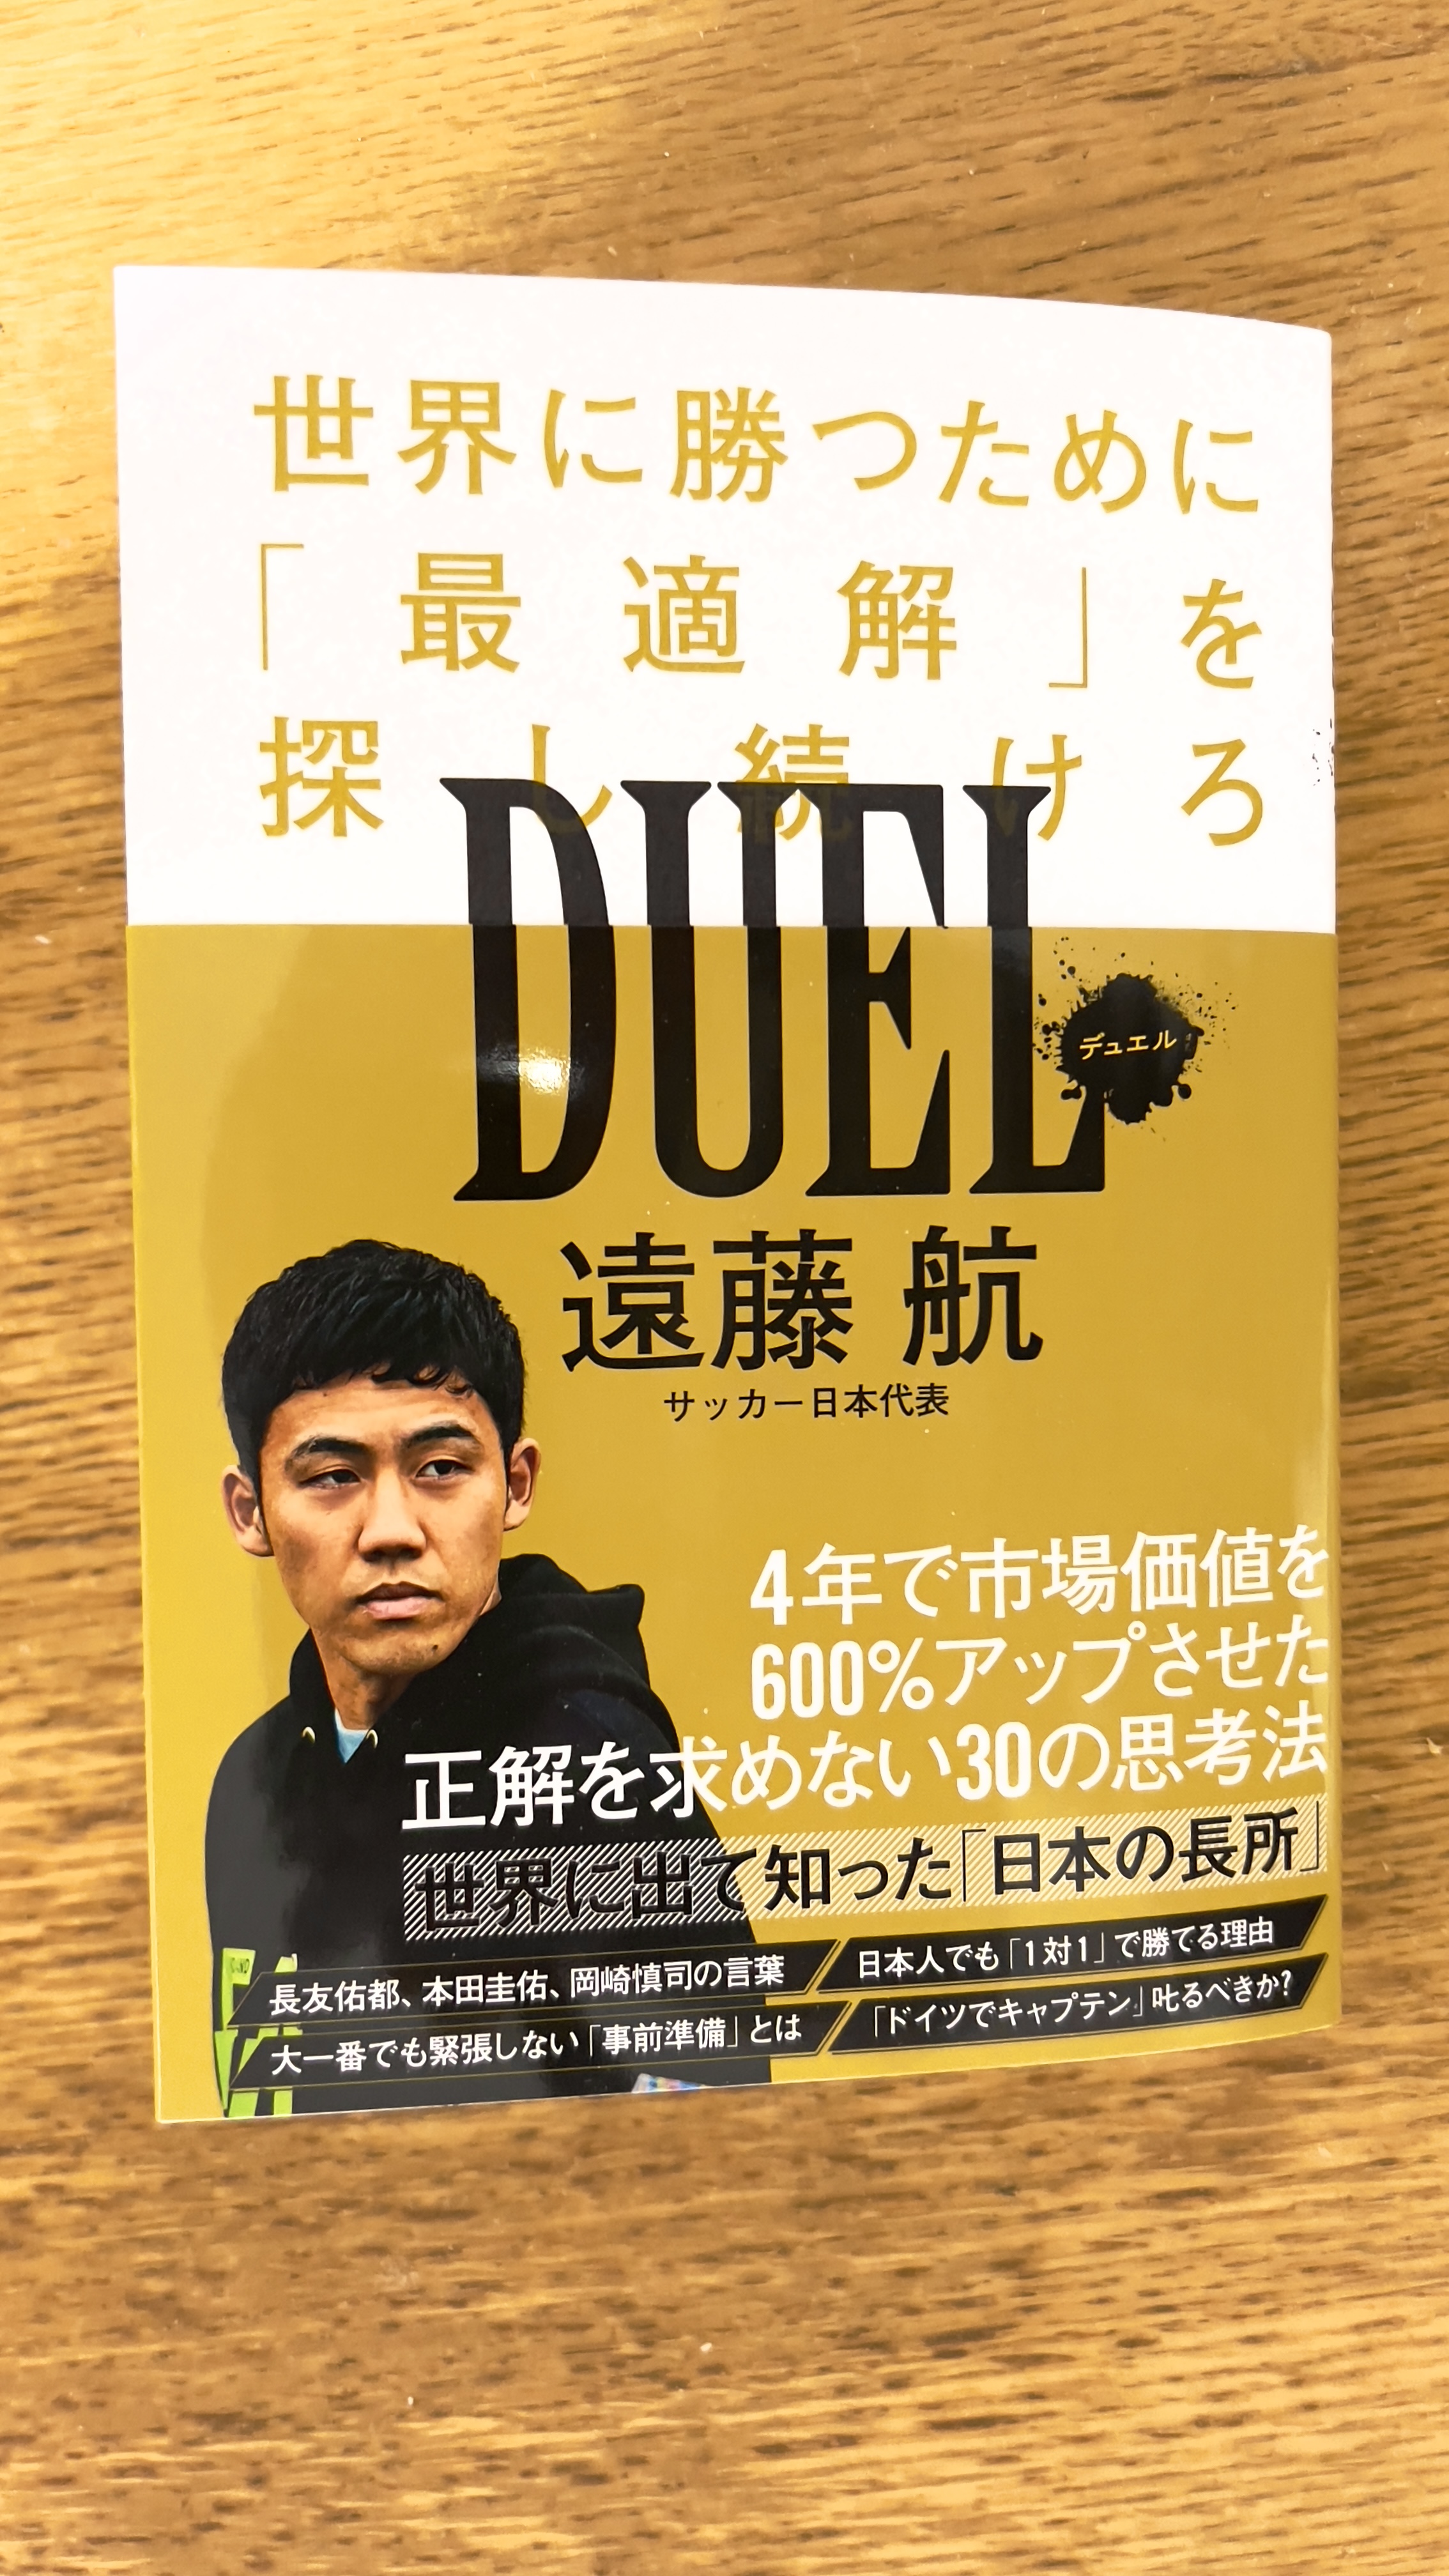 DUEL（デュエル） - 世界に勝つために「最適解」を探し続けろ